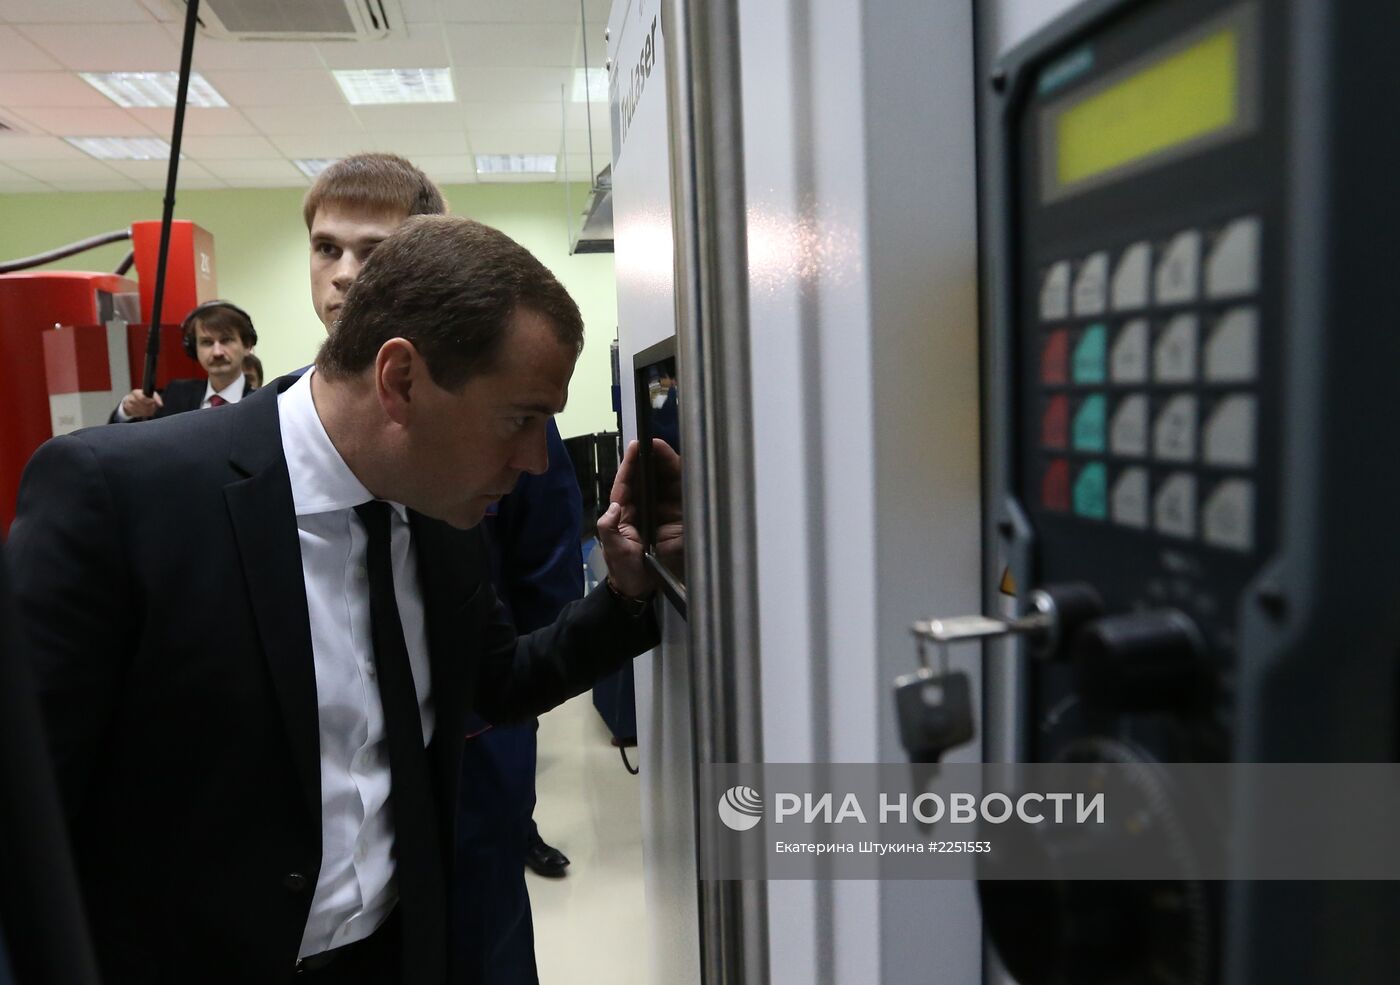 Д.Медведев посетил МГТУ "Станкин"